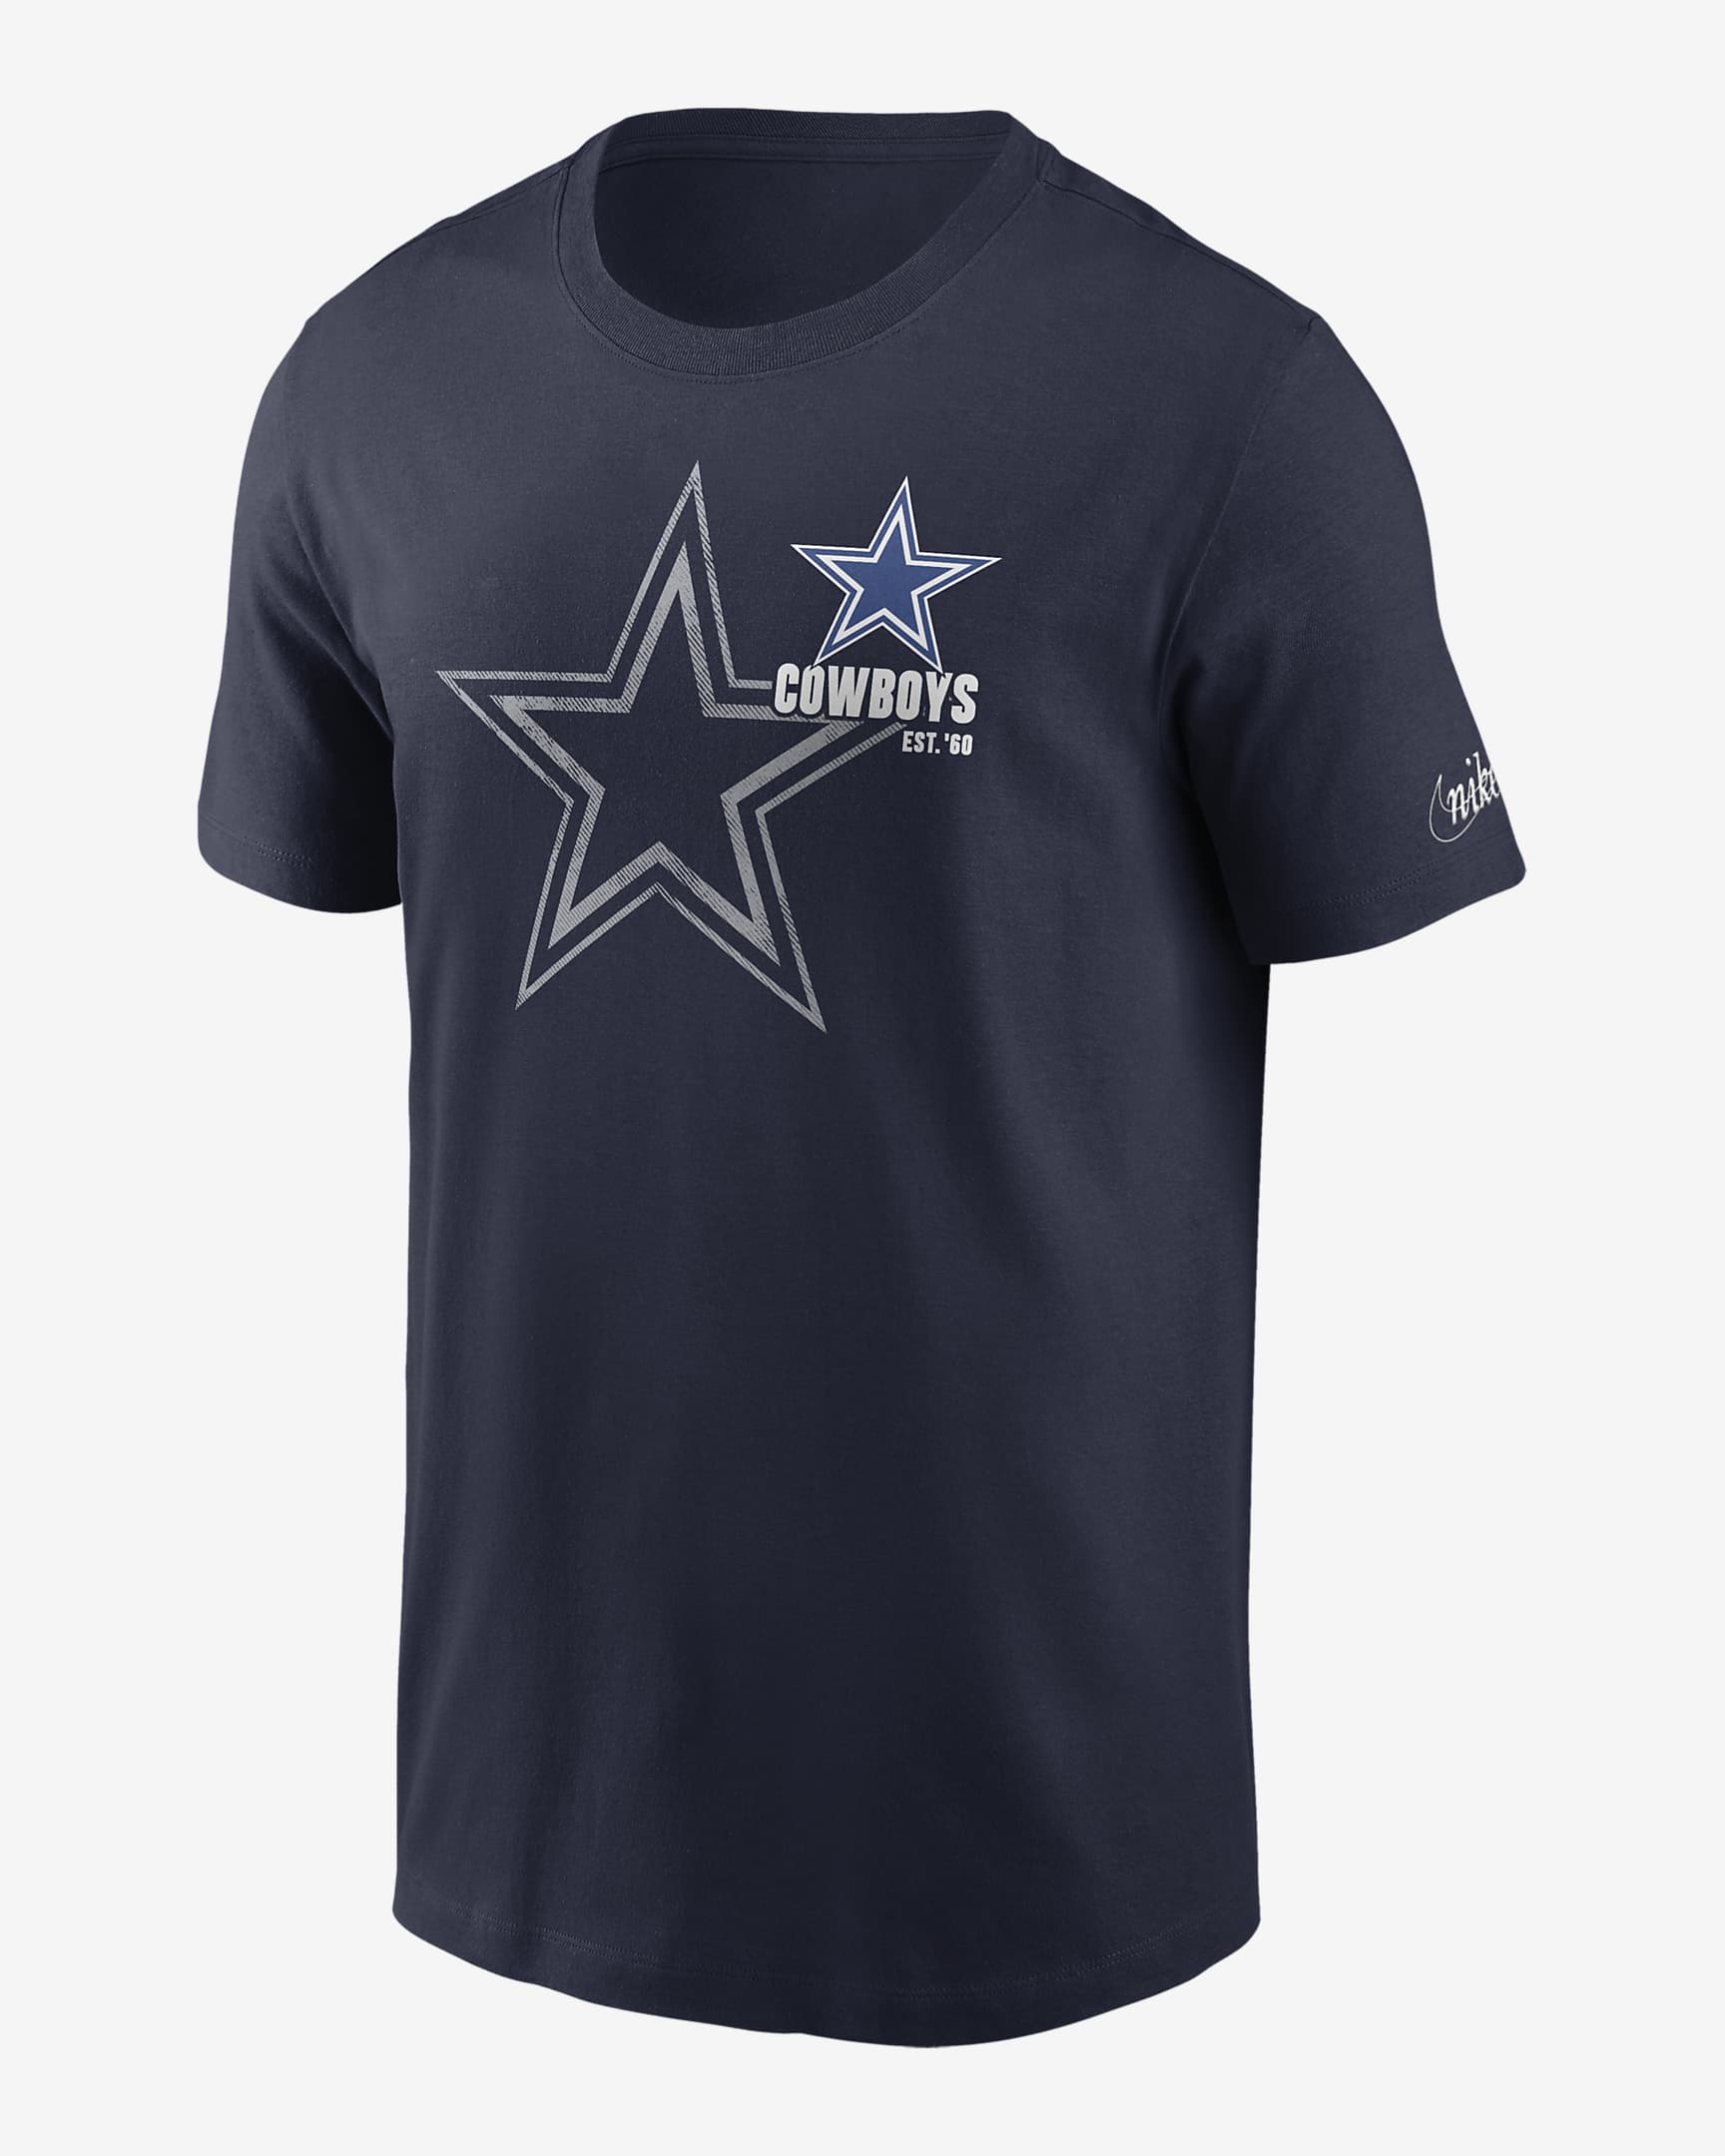 Playera Nike de la NFL para hombre Dallas Cowboys Logo Essential. Nike.com